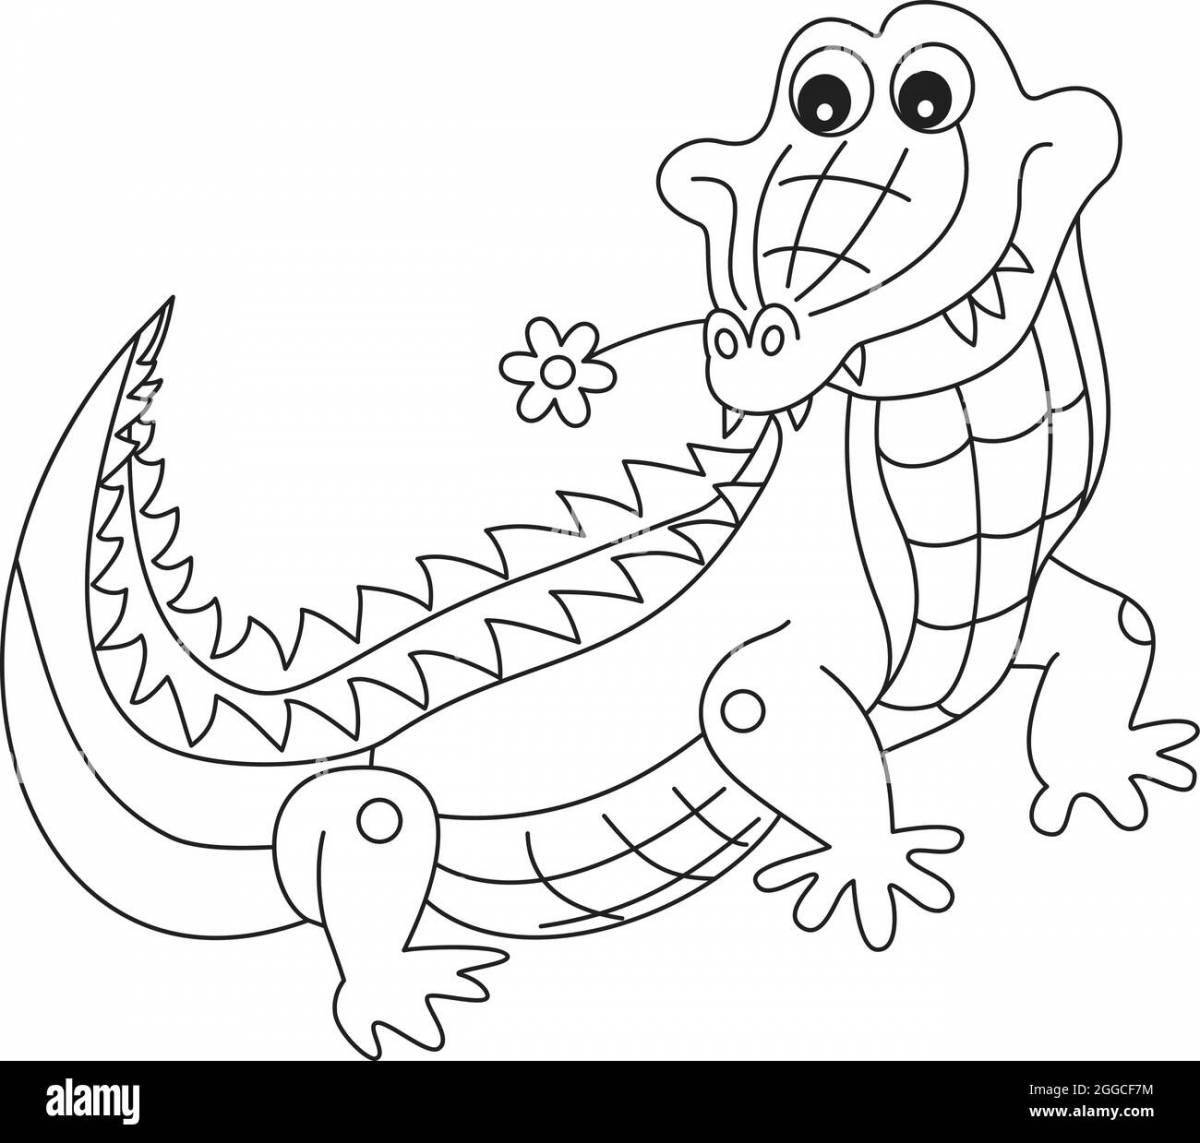 Милая раскраска крокодил для детей 3-4 лет